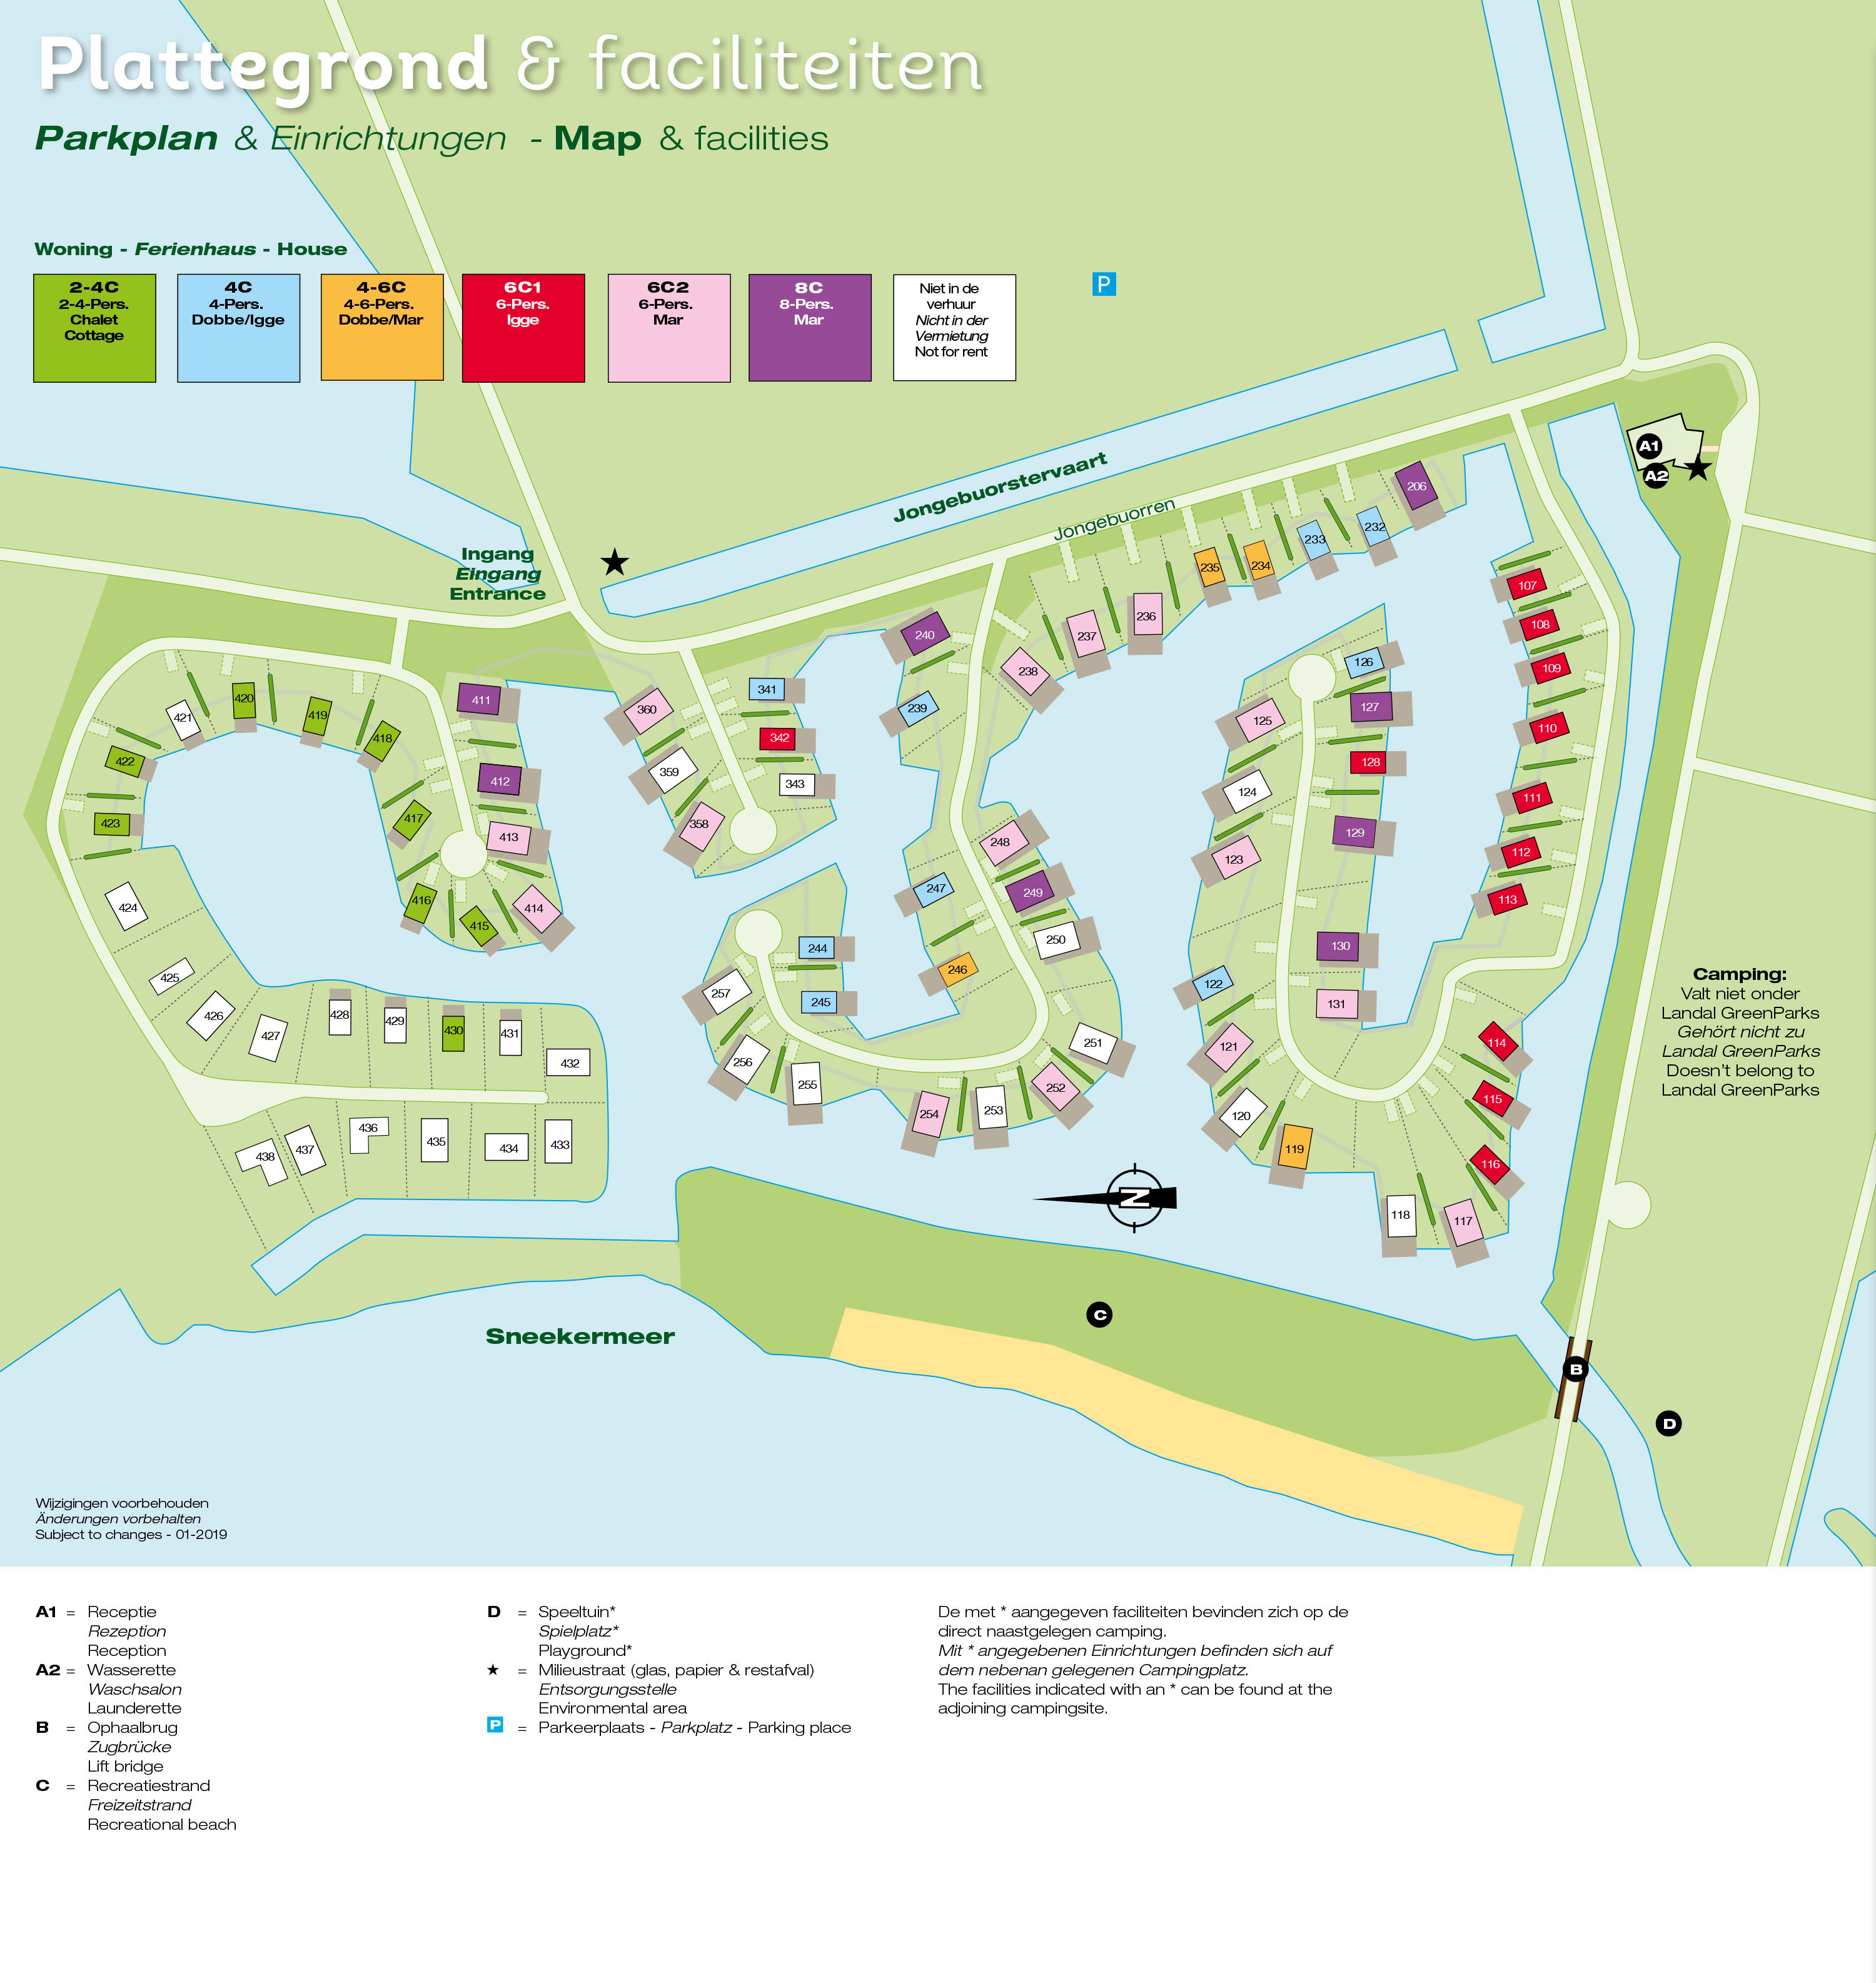 Lageplan Landal Waterpark Sneekermeer